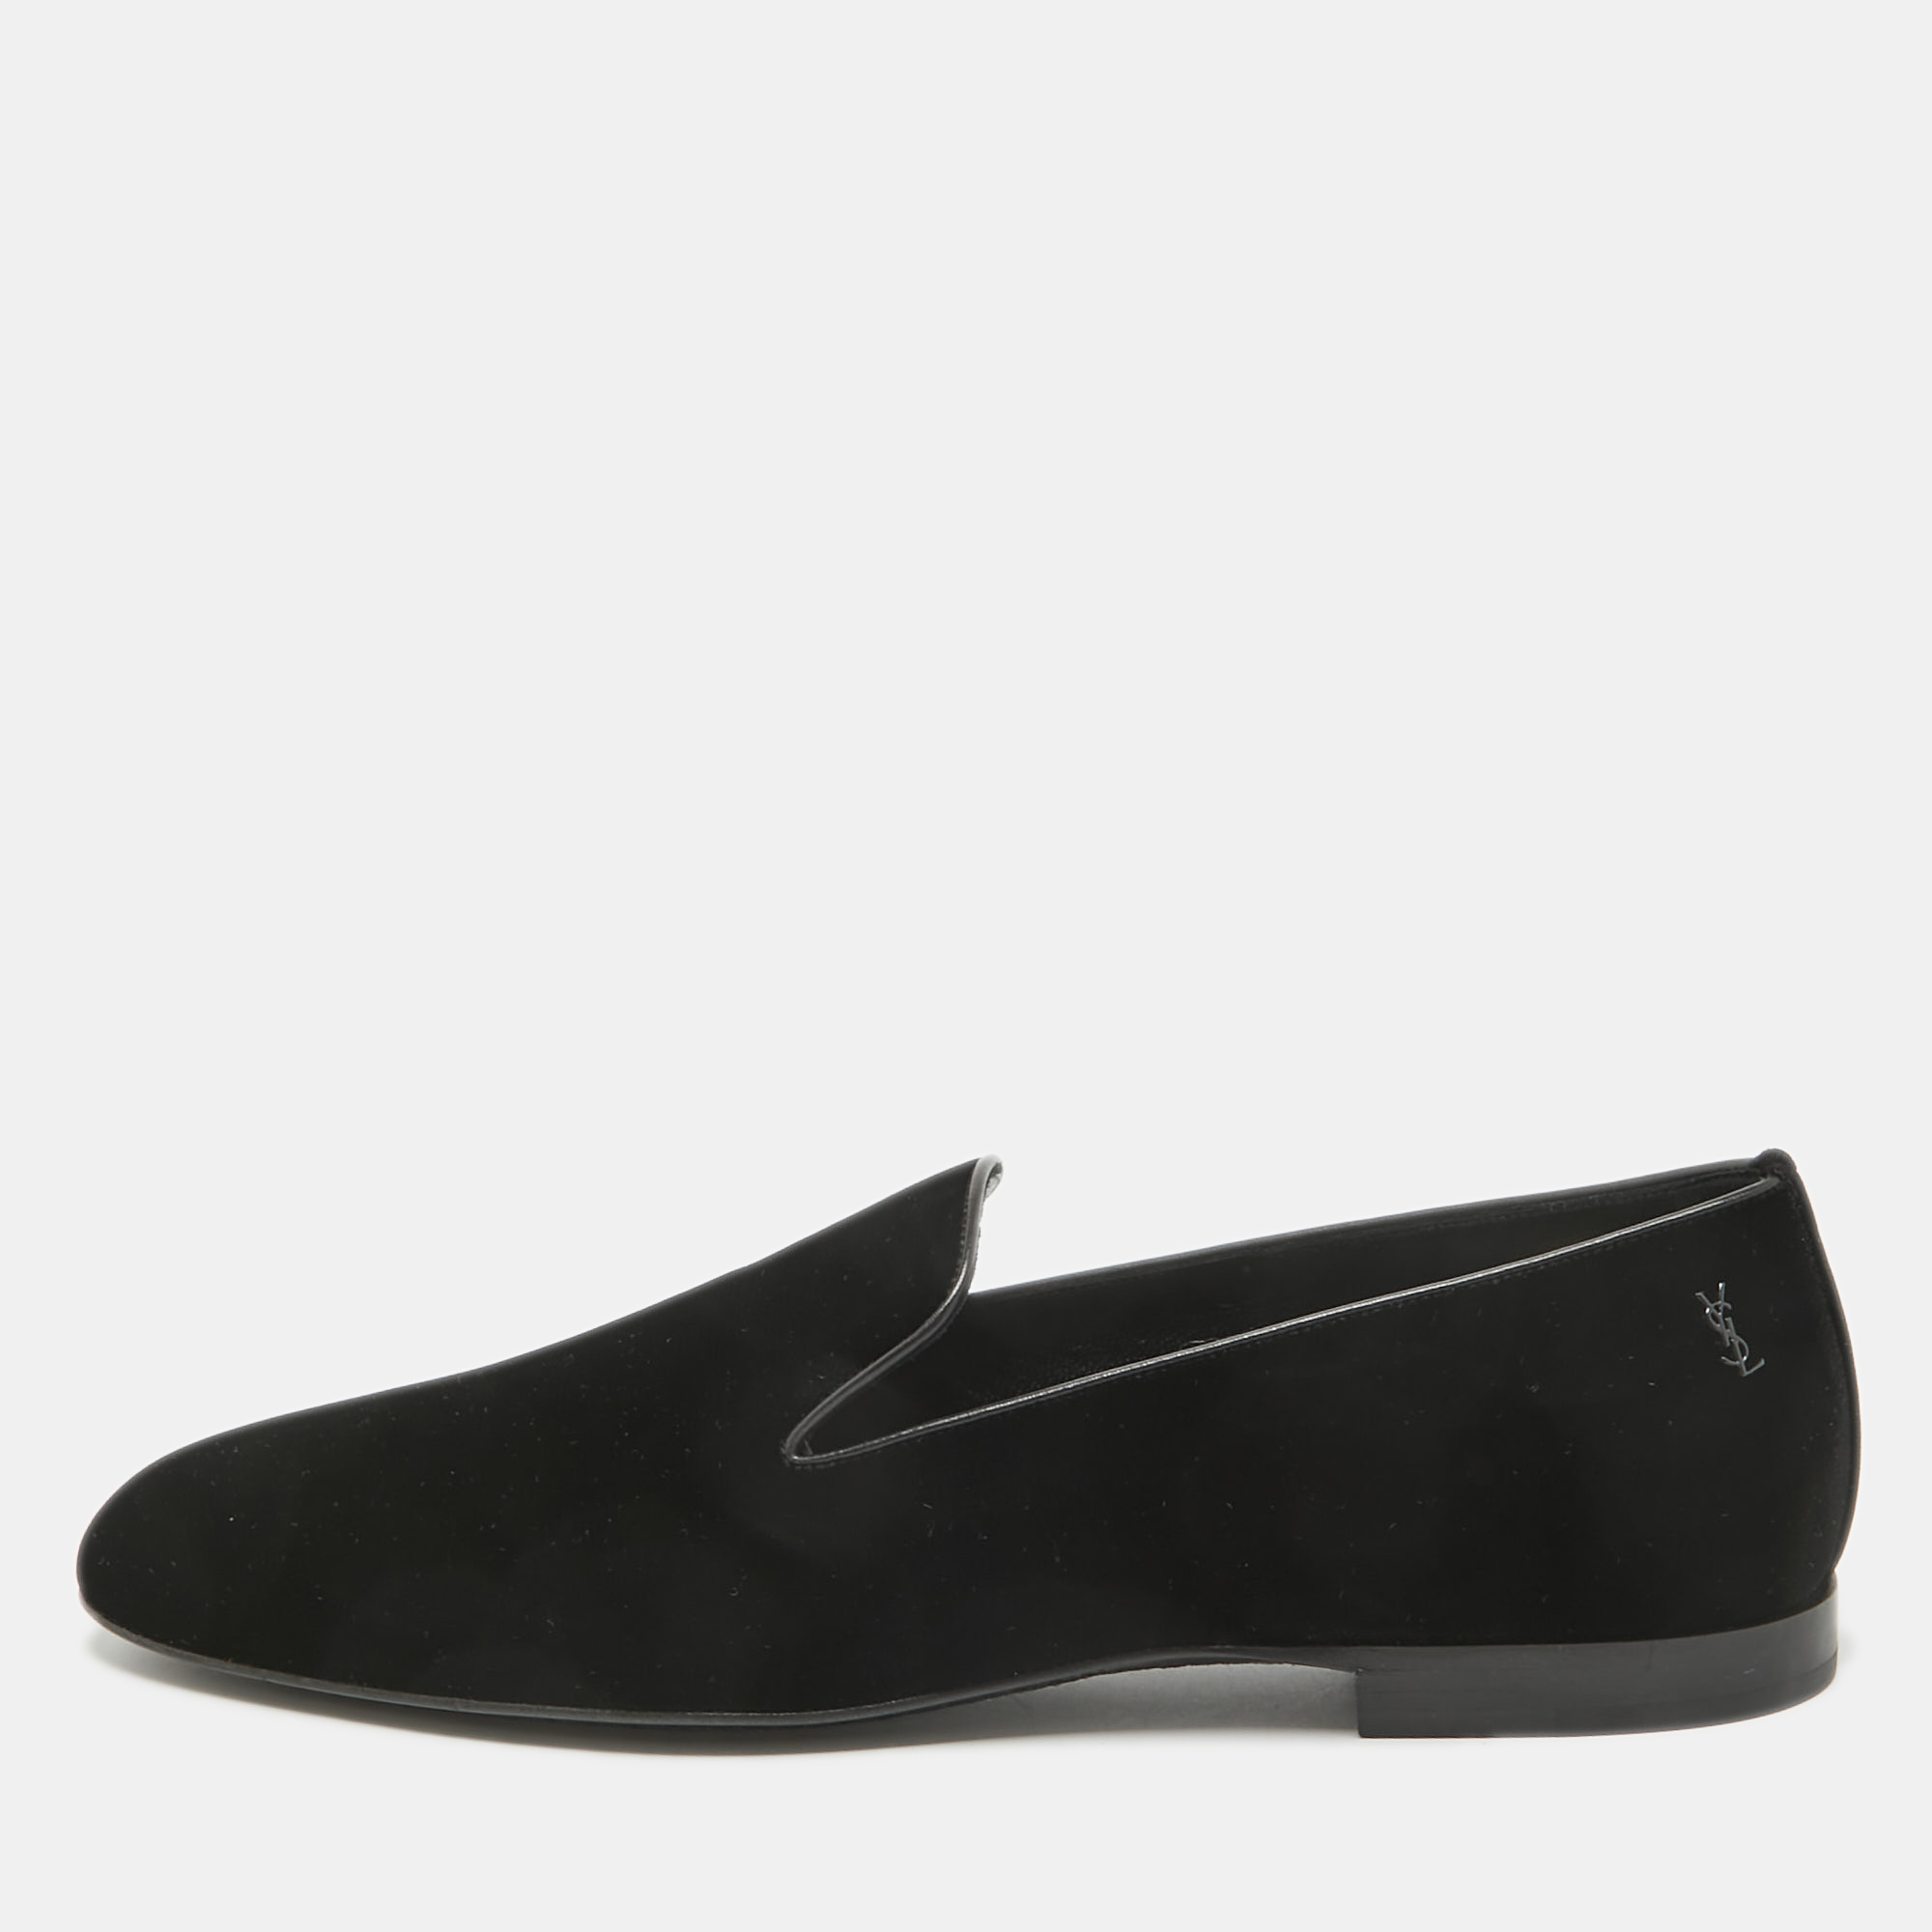 Saint laurent paris saint laurent black velvet smoking slippers size 44